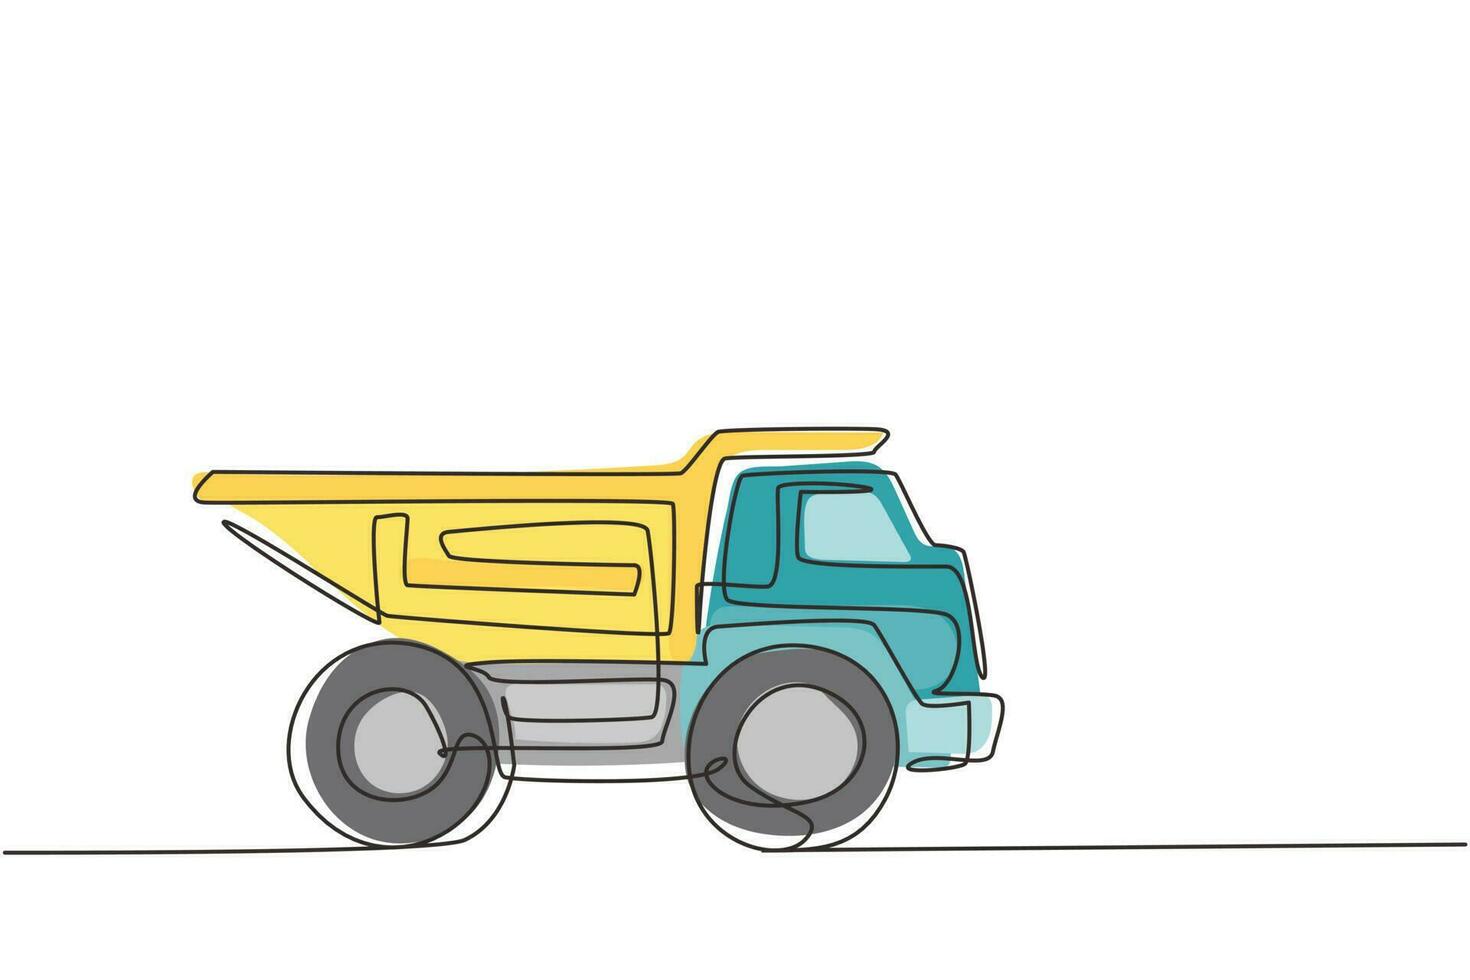 único brinquedo de caminhão basculante de desenho de linha. automóvel pesado para brincadeiras infantis. auto em design plano. transporte de caminhão basculante de brinquedo para crianças. ilustração em vetor gráfico de desenho de linha contínua moderna